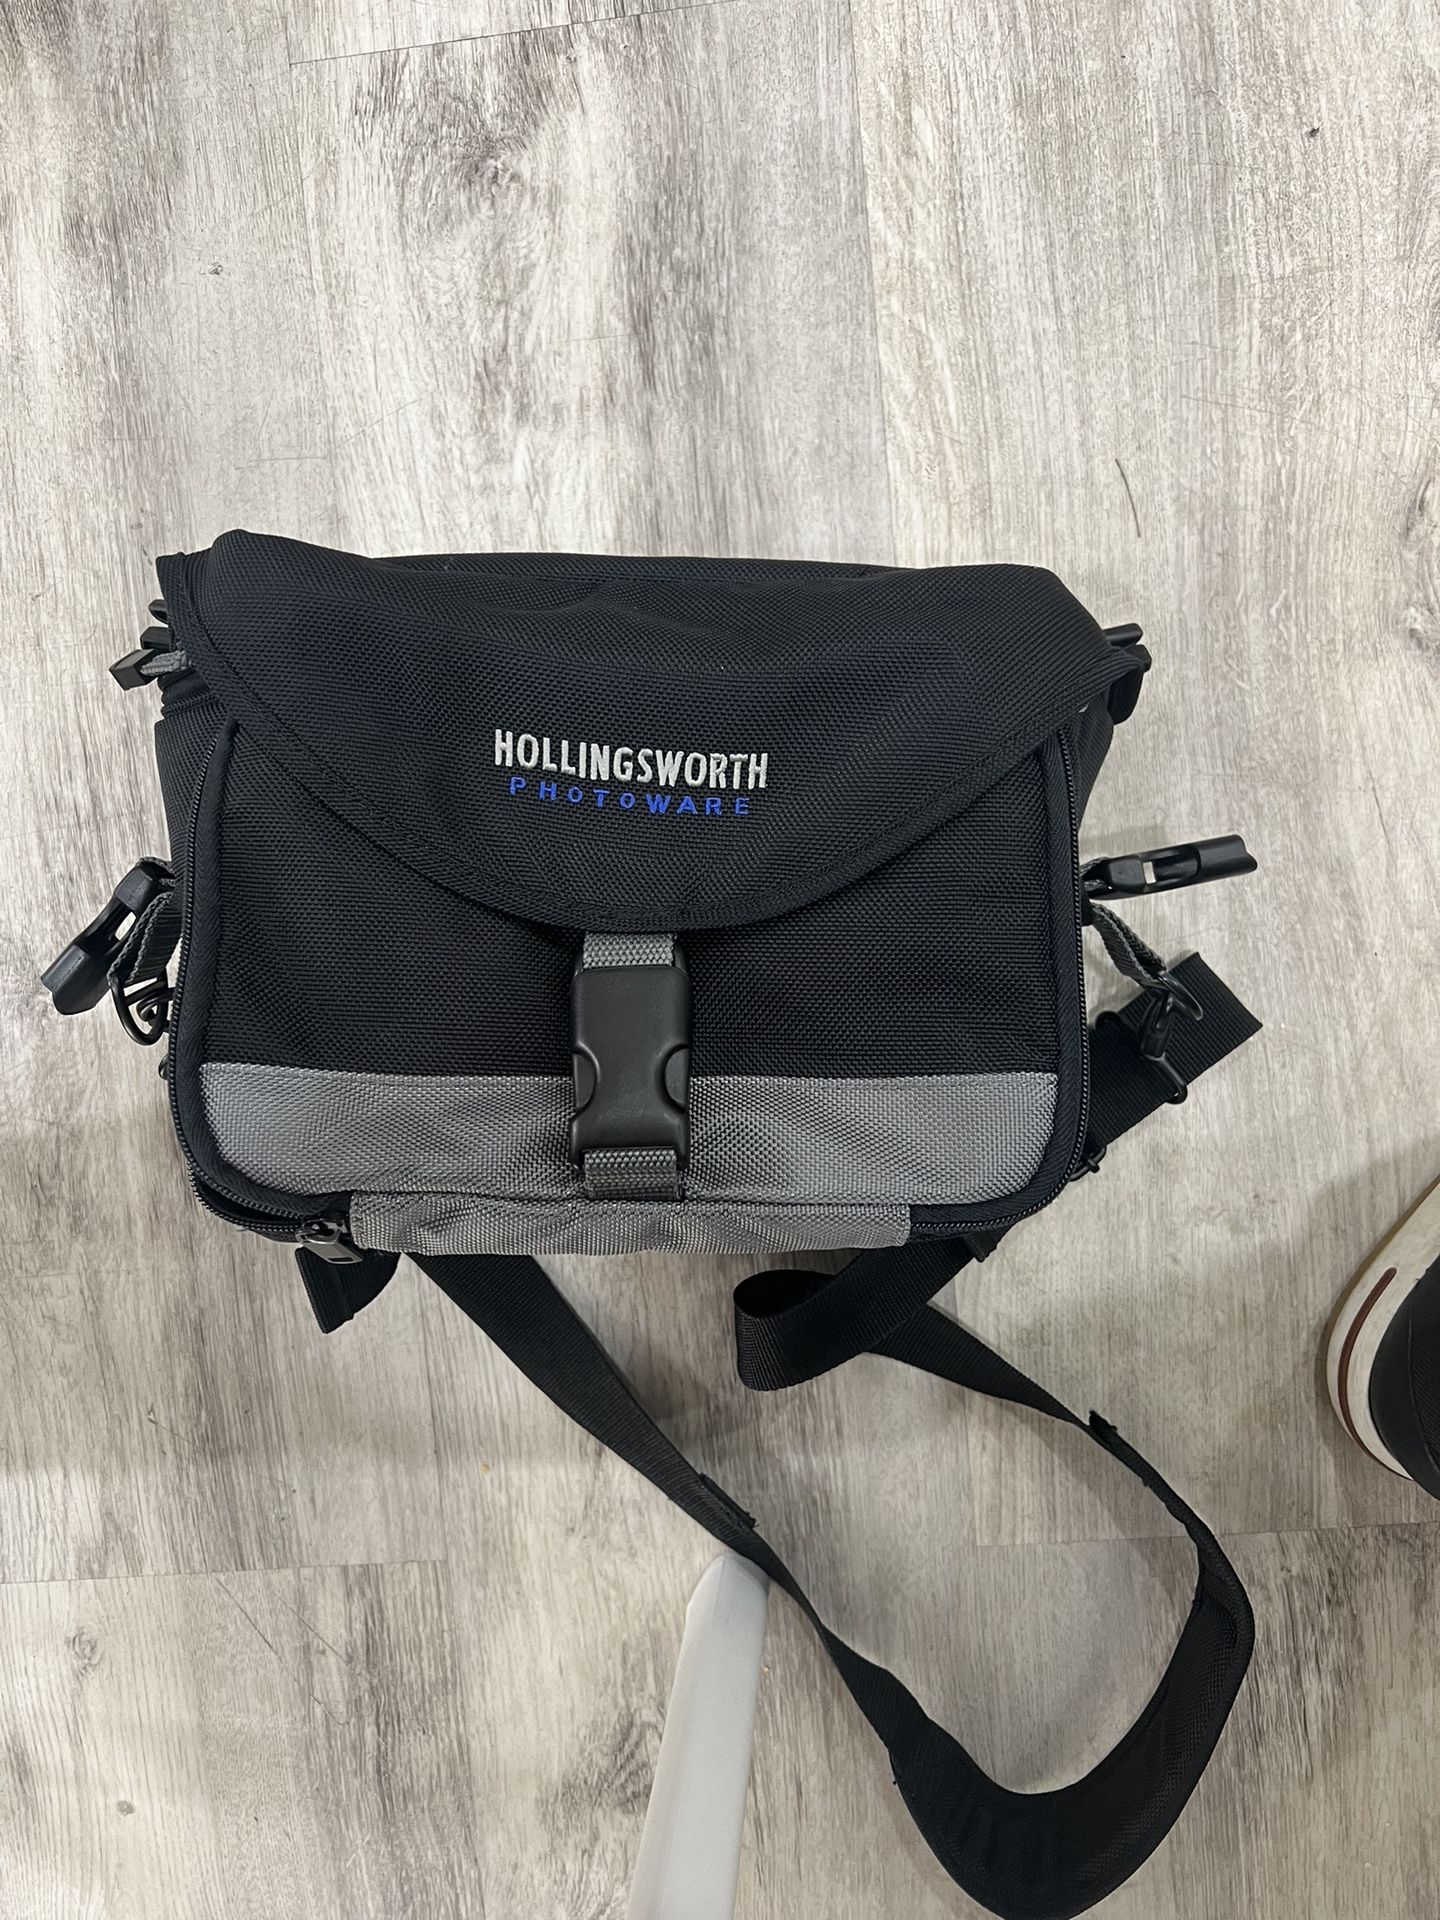 Hollingsworth Photoware Camera Bag